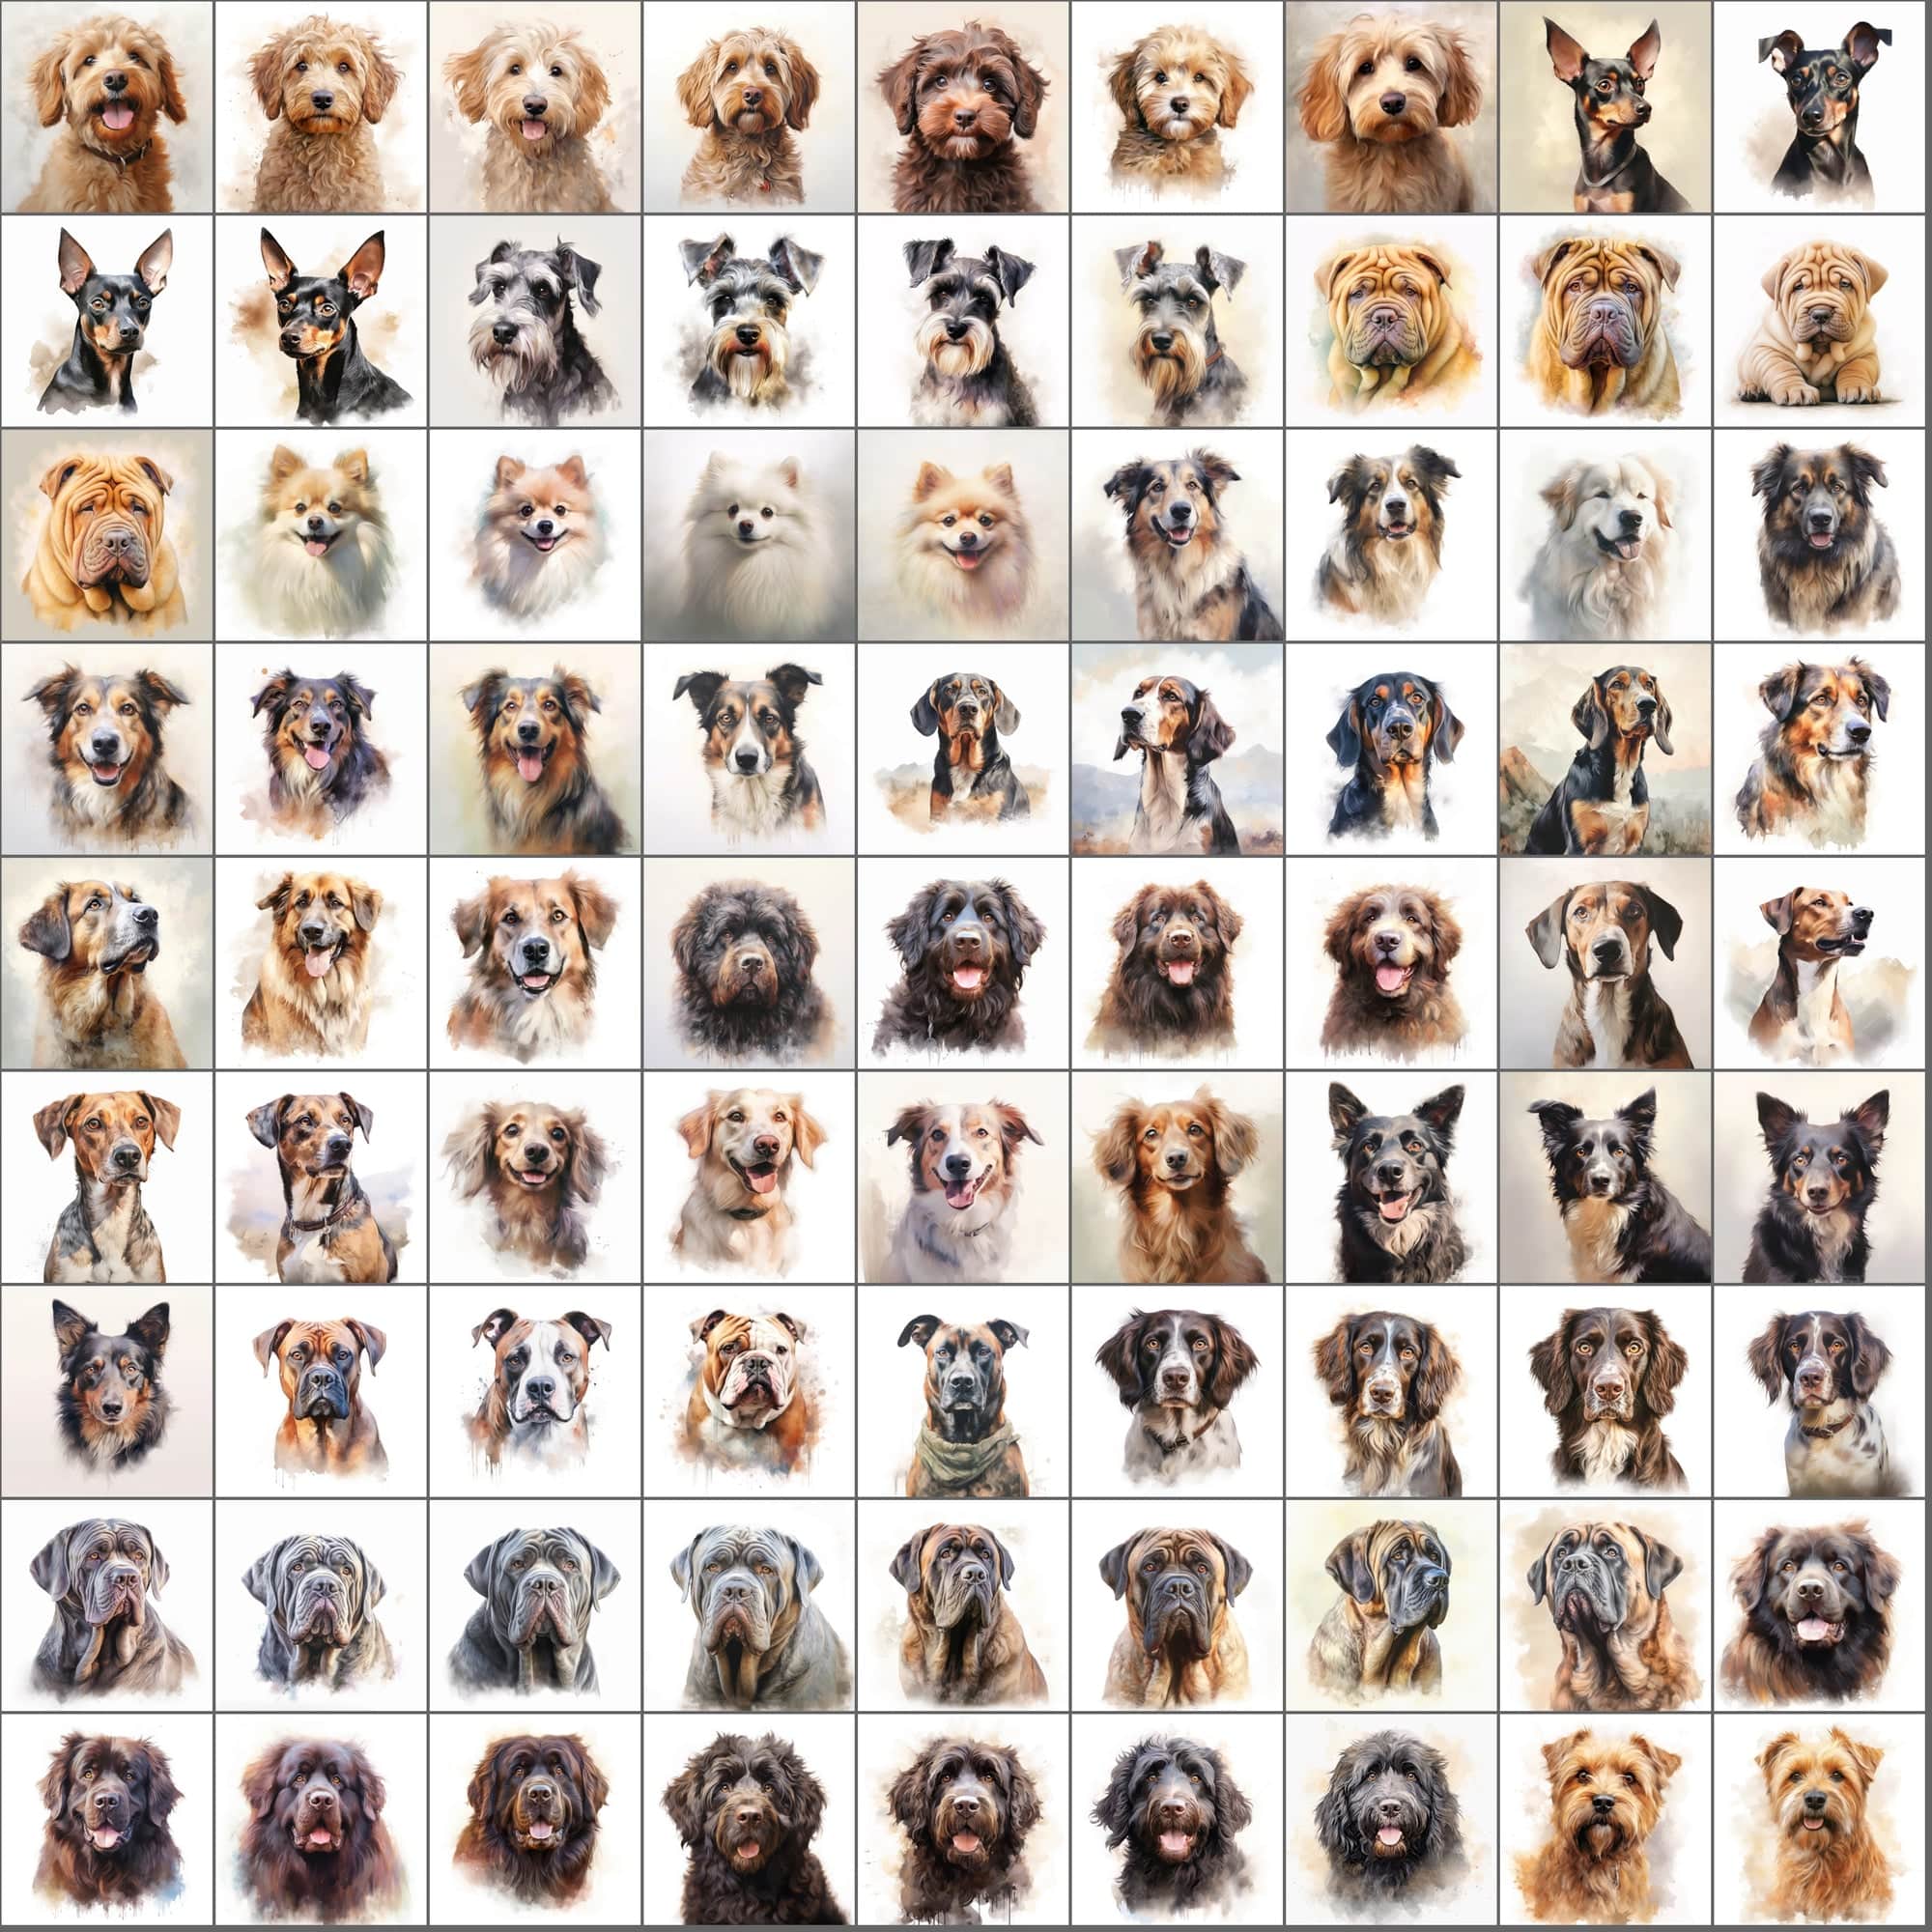 2600+ Dog Breed Art Images - Art Style with Transparent Background Digital Download Sumobundle